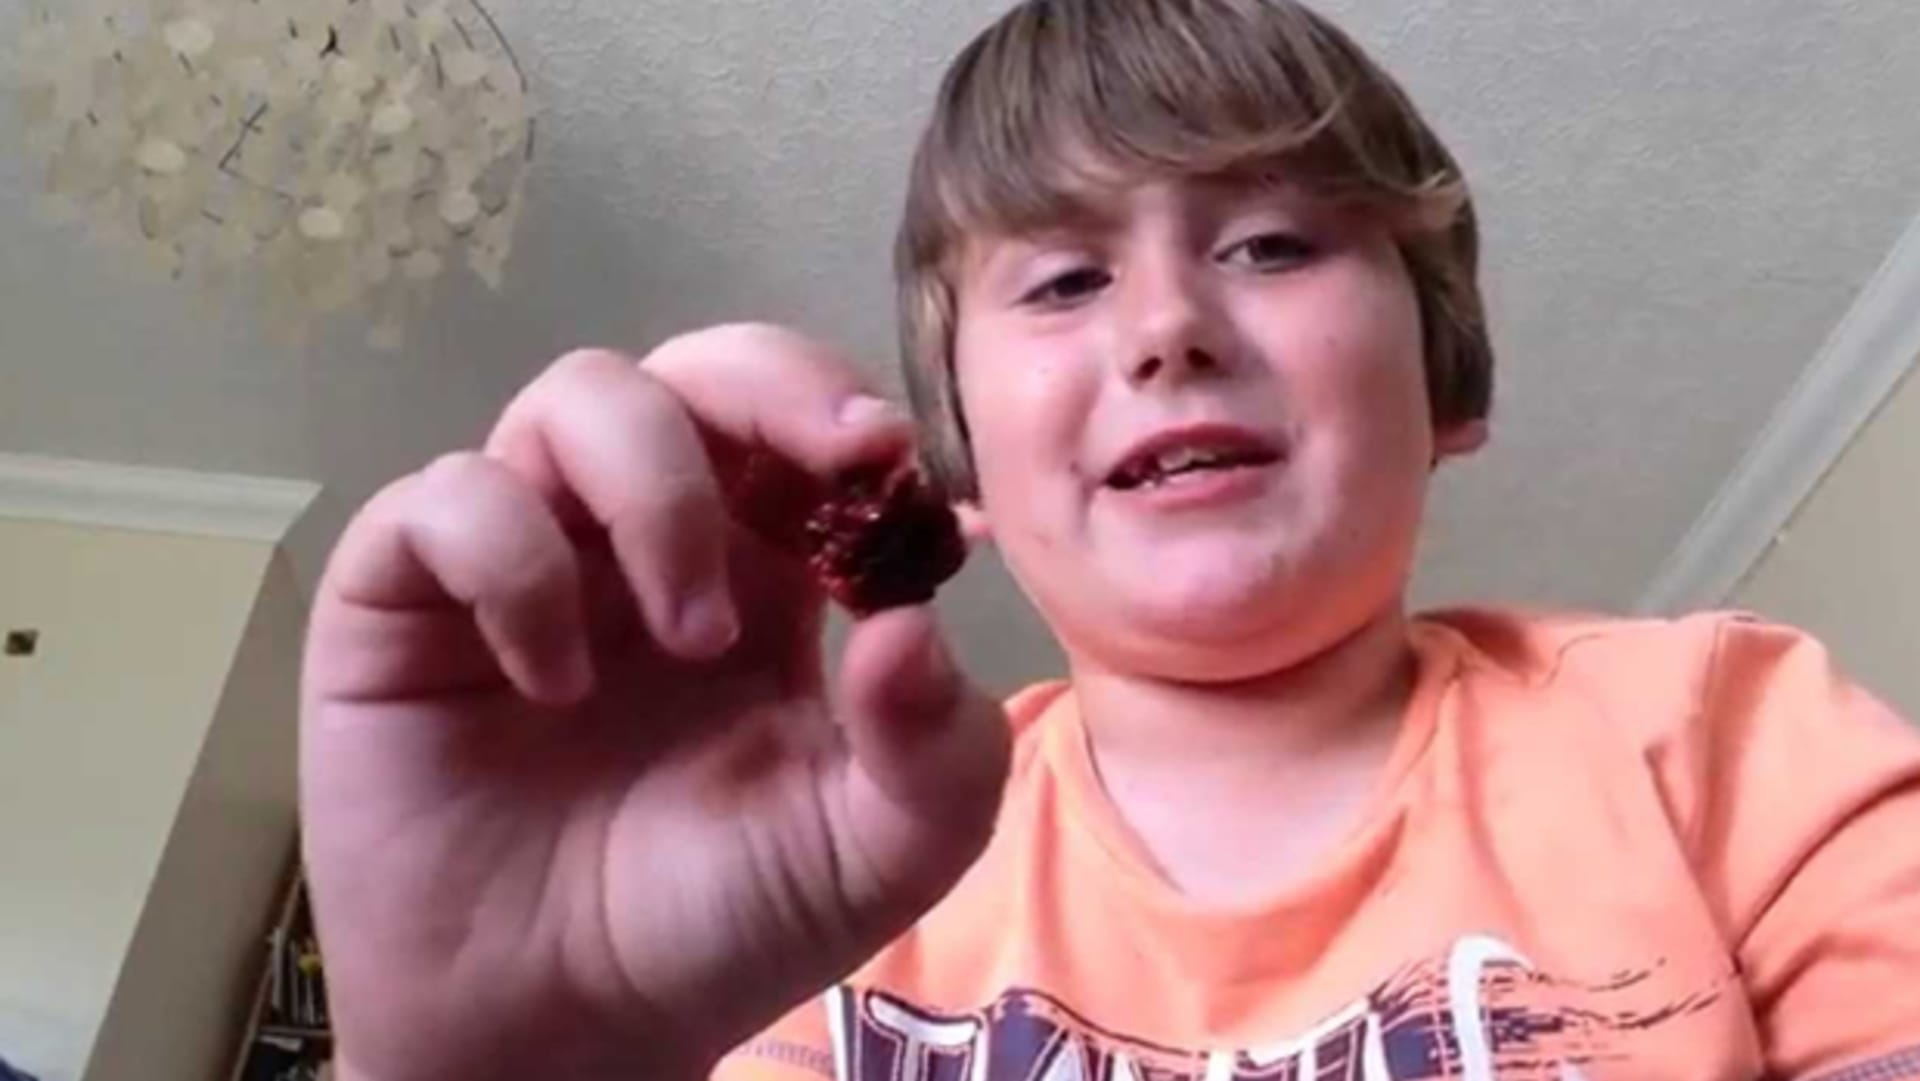 9letý chlapec snědl nejpálivější chilli papričku